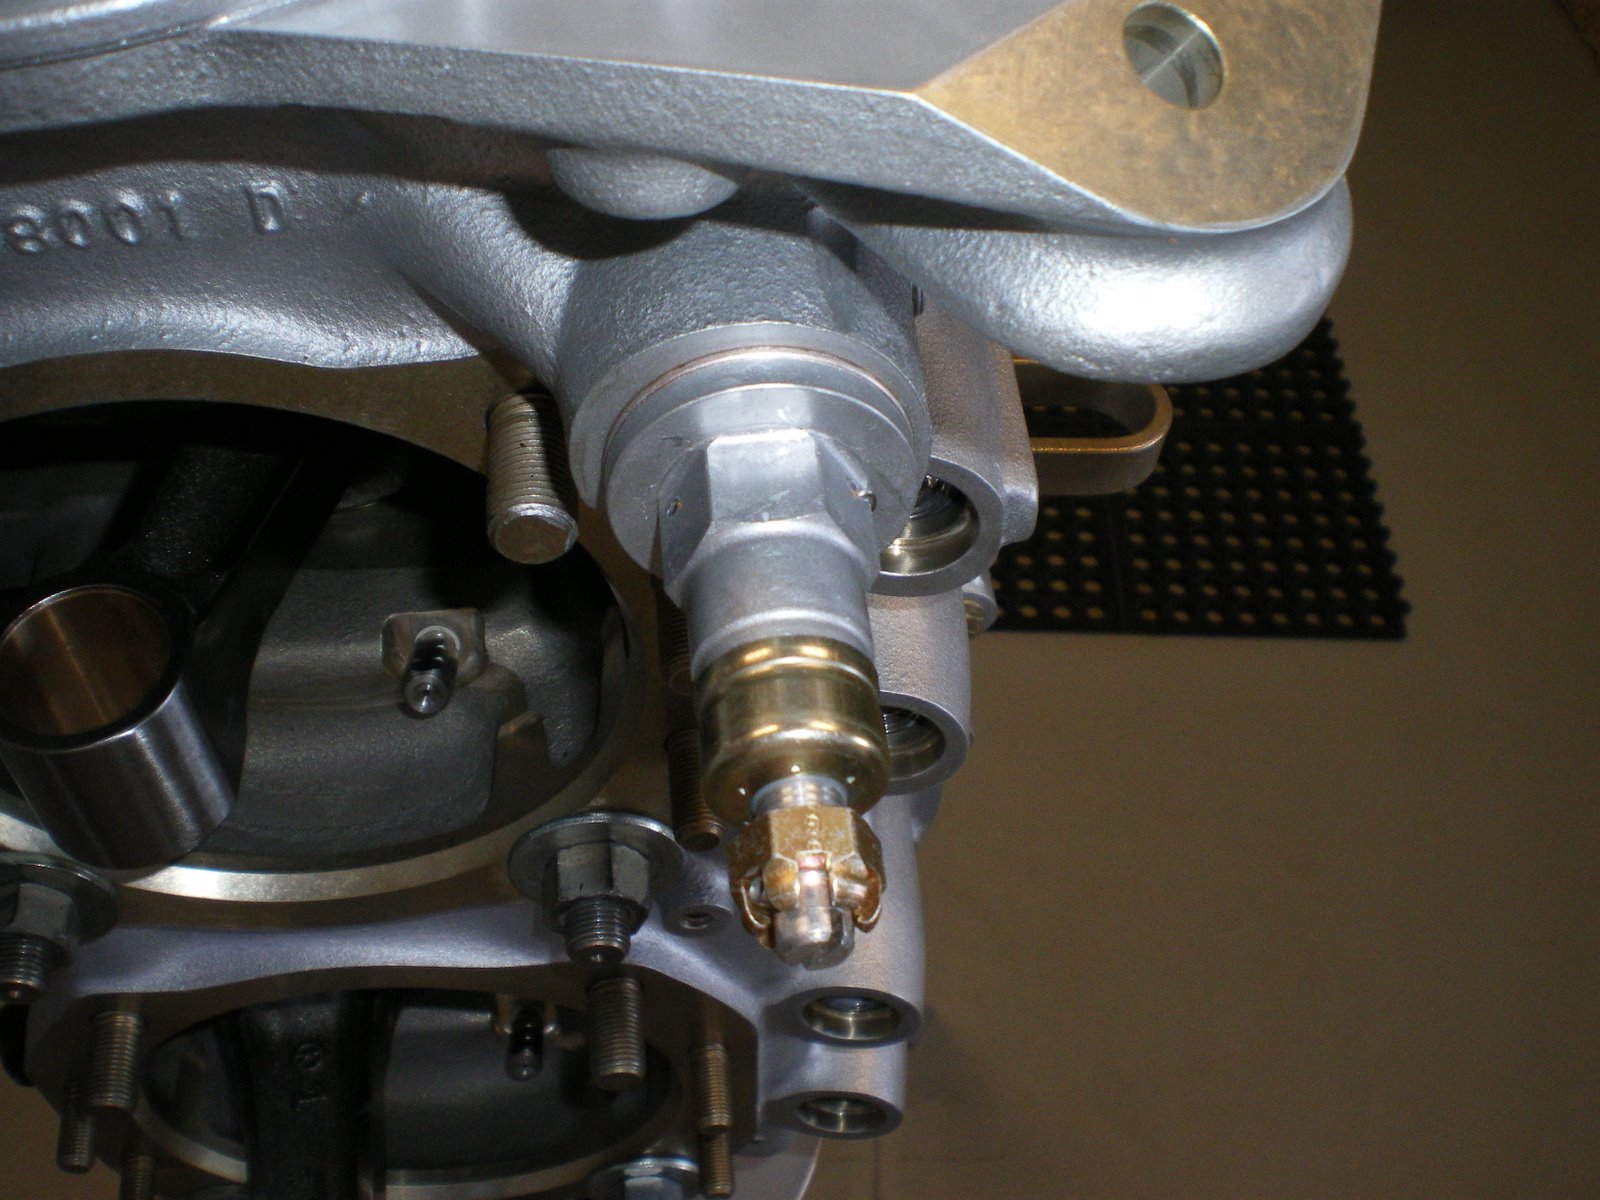 Oil pressure relief valve